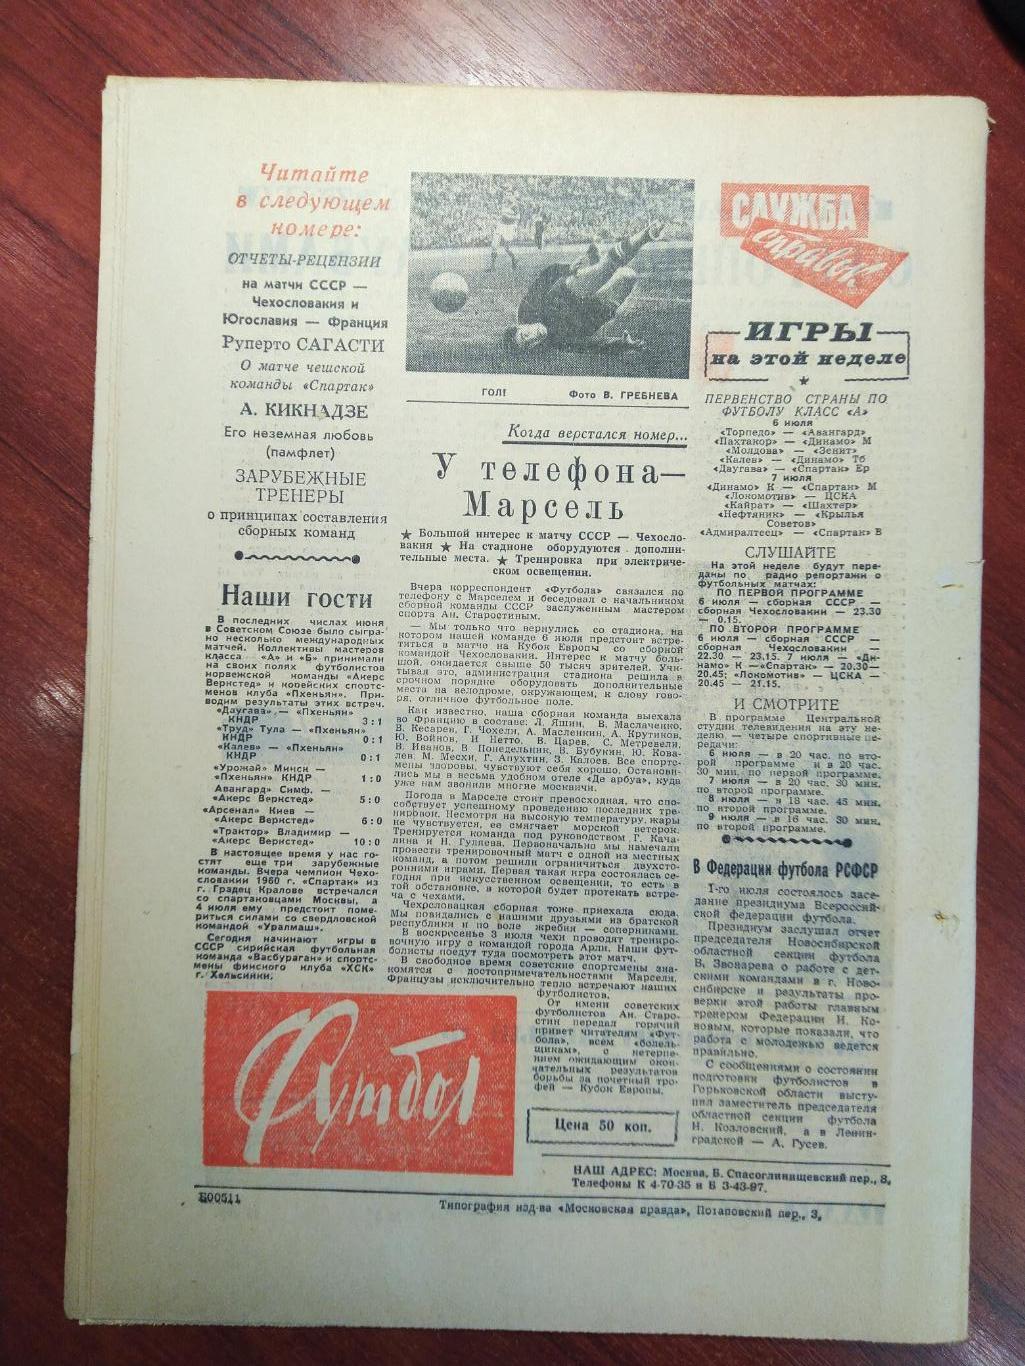 Еженедельник Футбол №6 от 3 июля 1960.Первый год выпуска! Московский выпуск 1